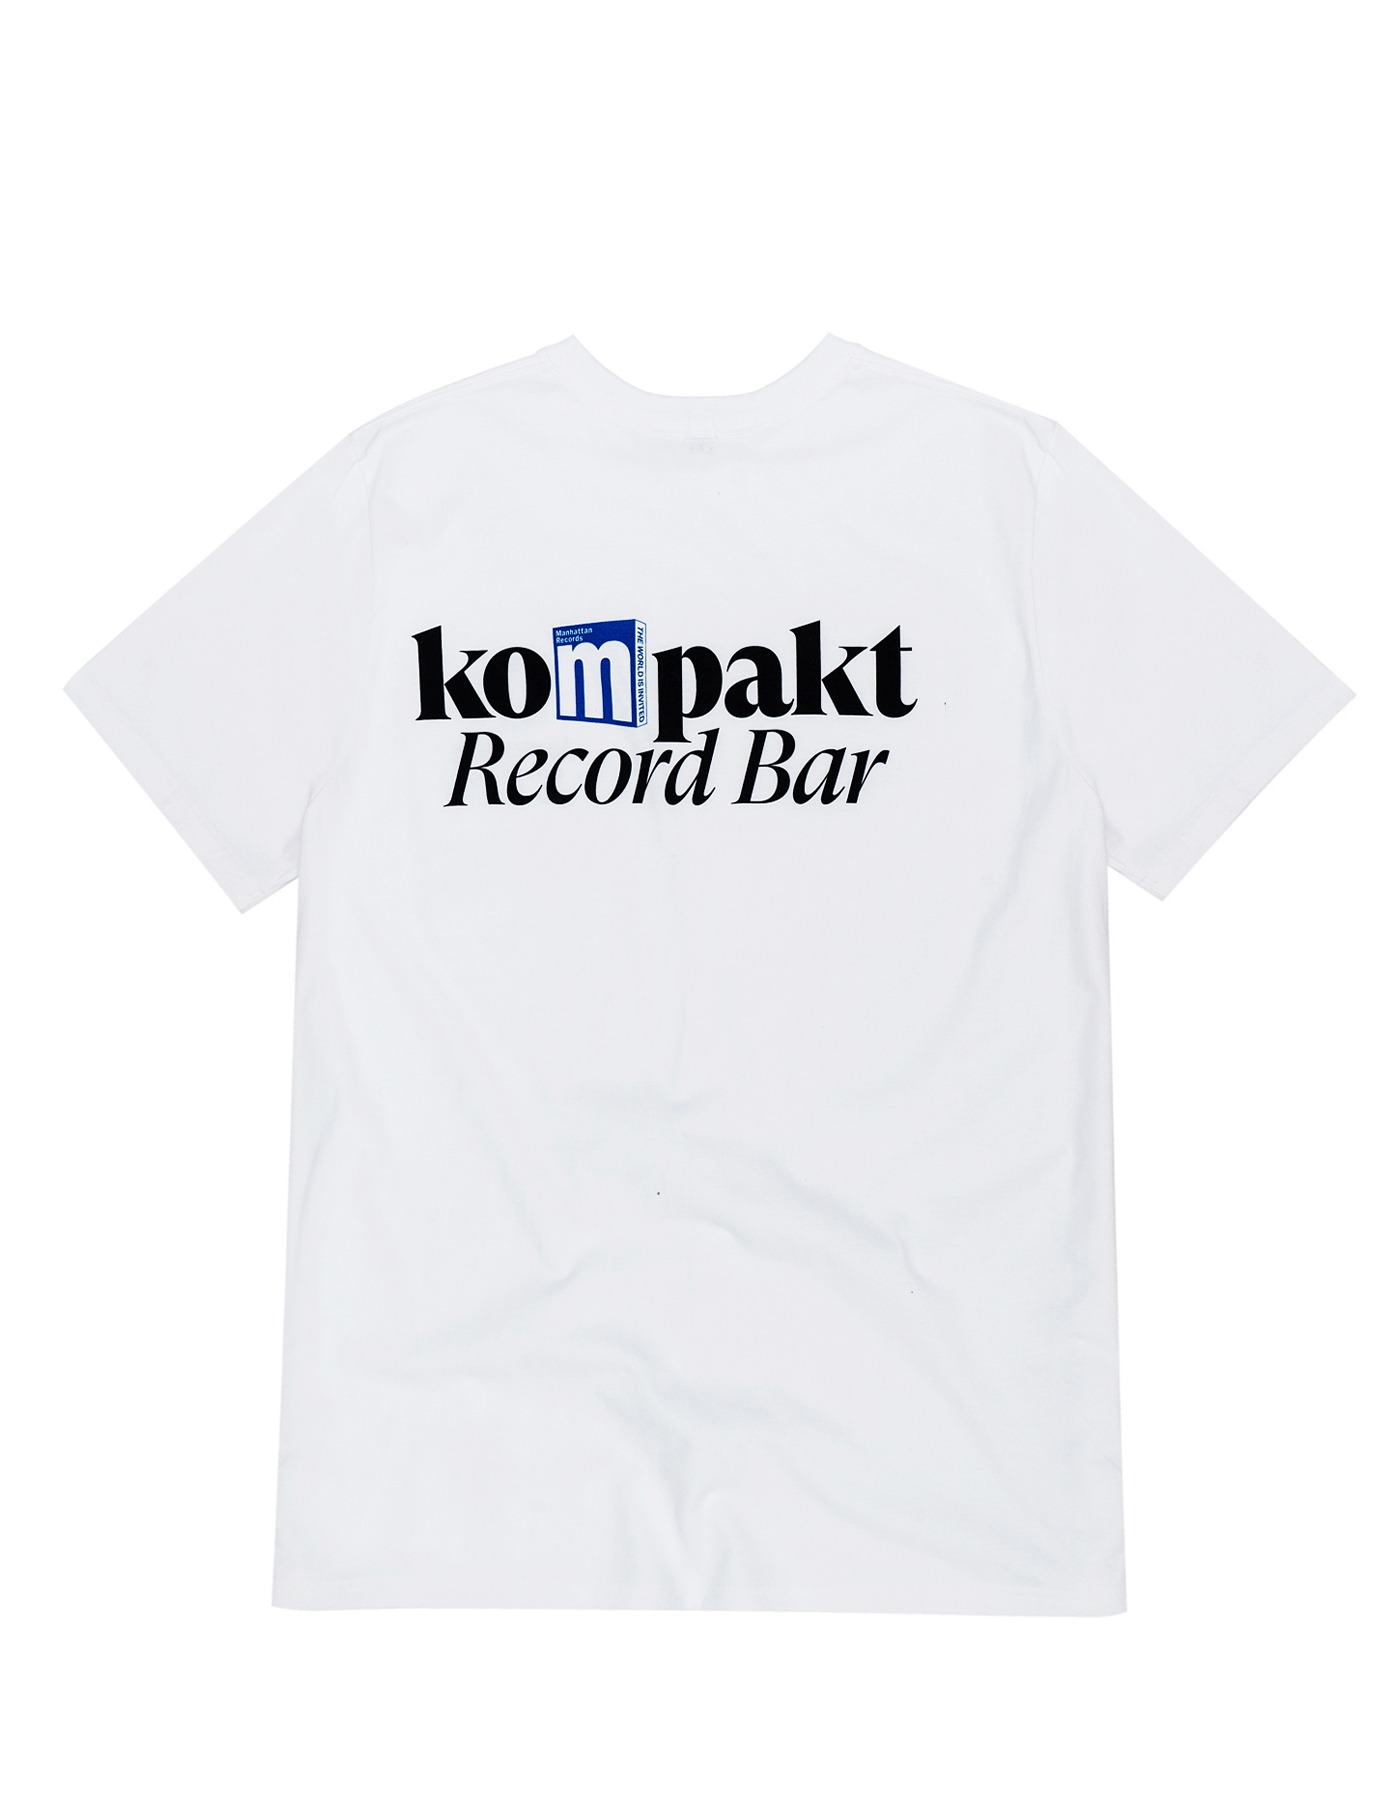 KRBxManhattan Records T-Shirt - White